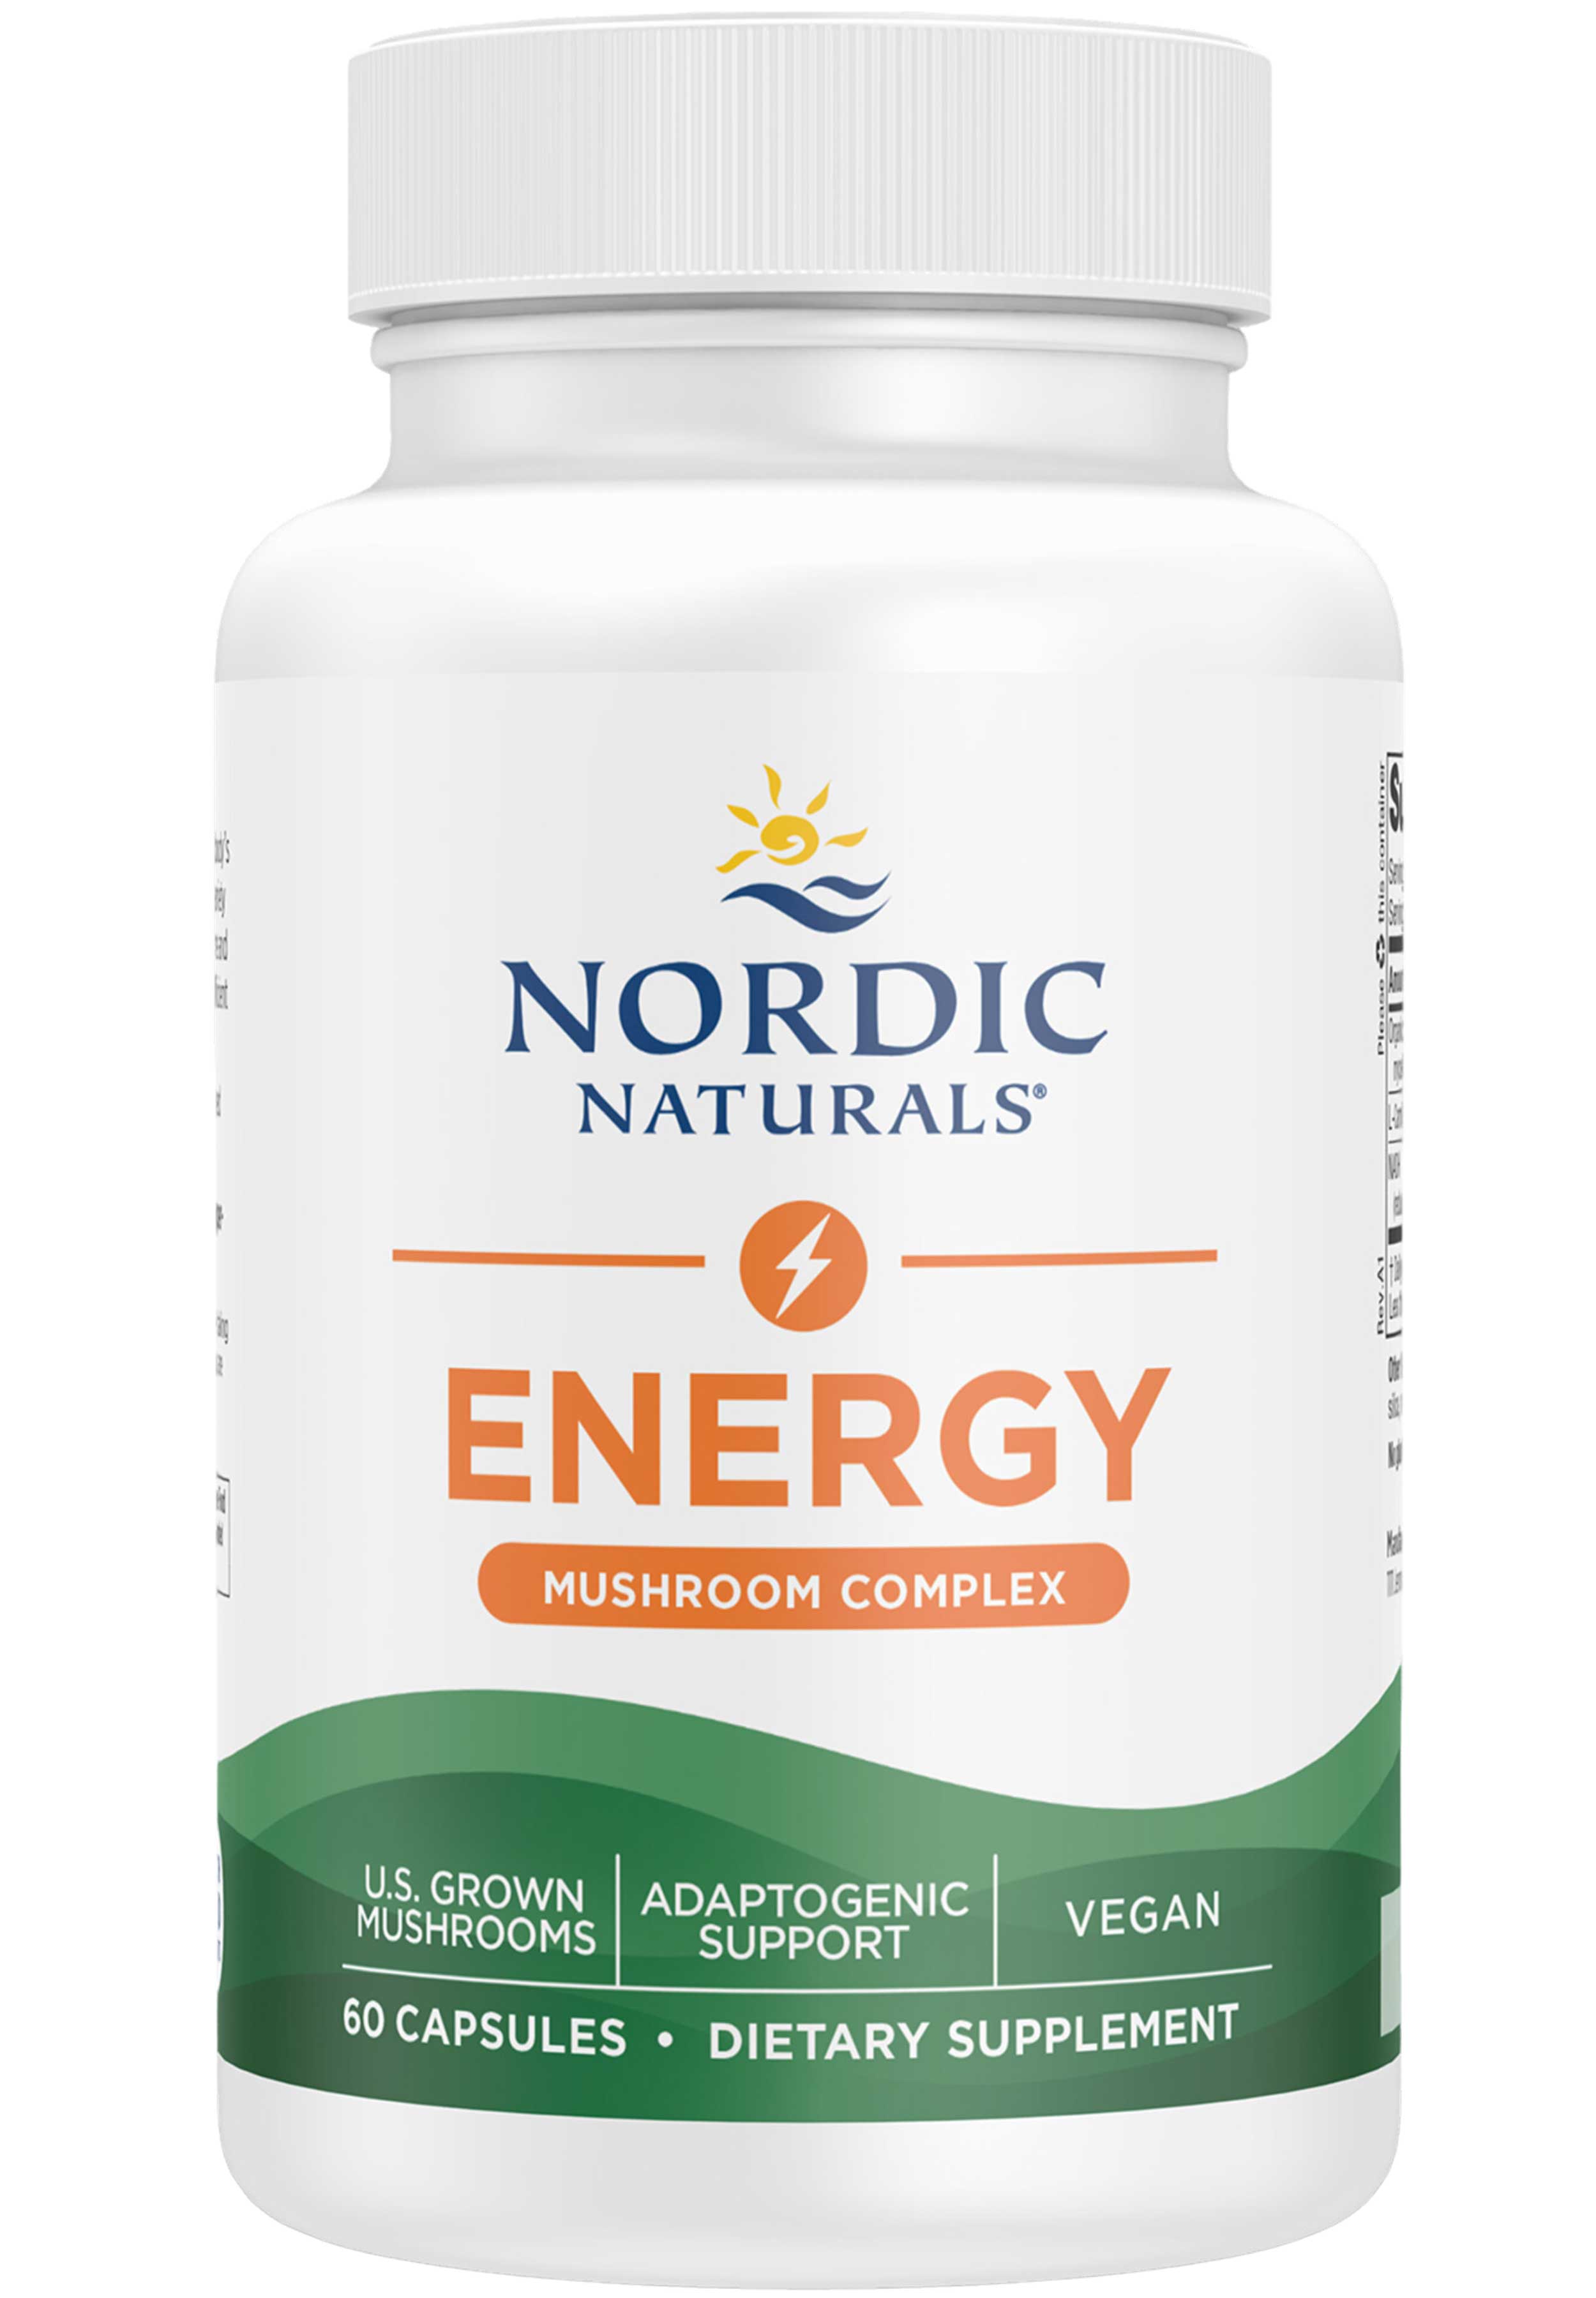 Nordic Naturals Energy Mushroom Complex